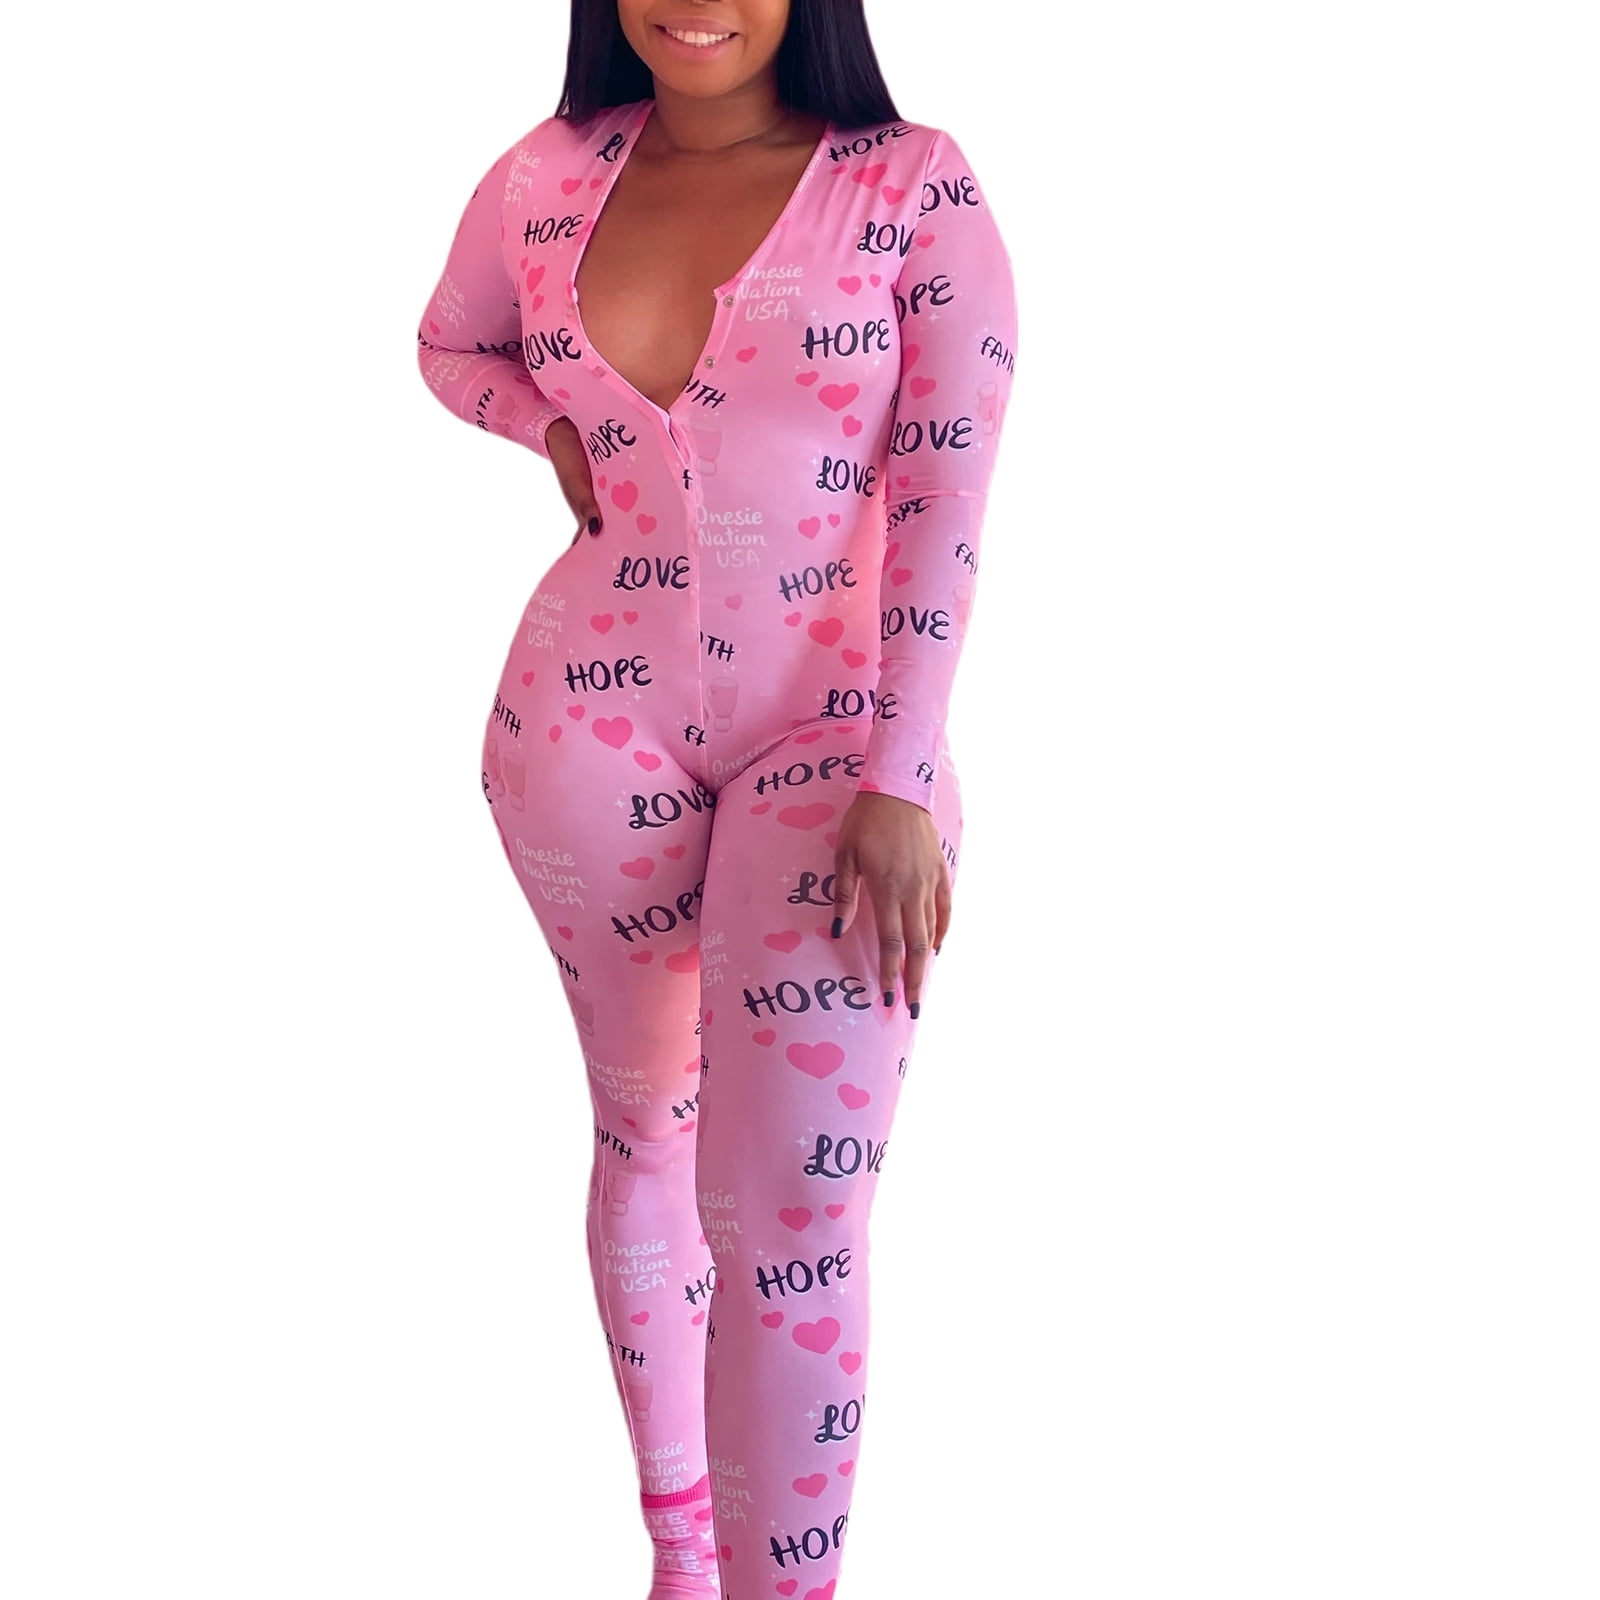 Plaid Jumpsuit Pajamas for Women Butt Flap Long Sleeve Onesie Bodysuit Cat Printed Adults Sleepwear Rompers